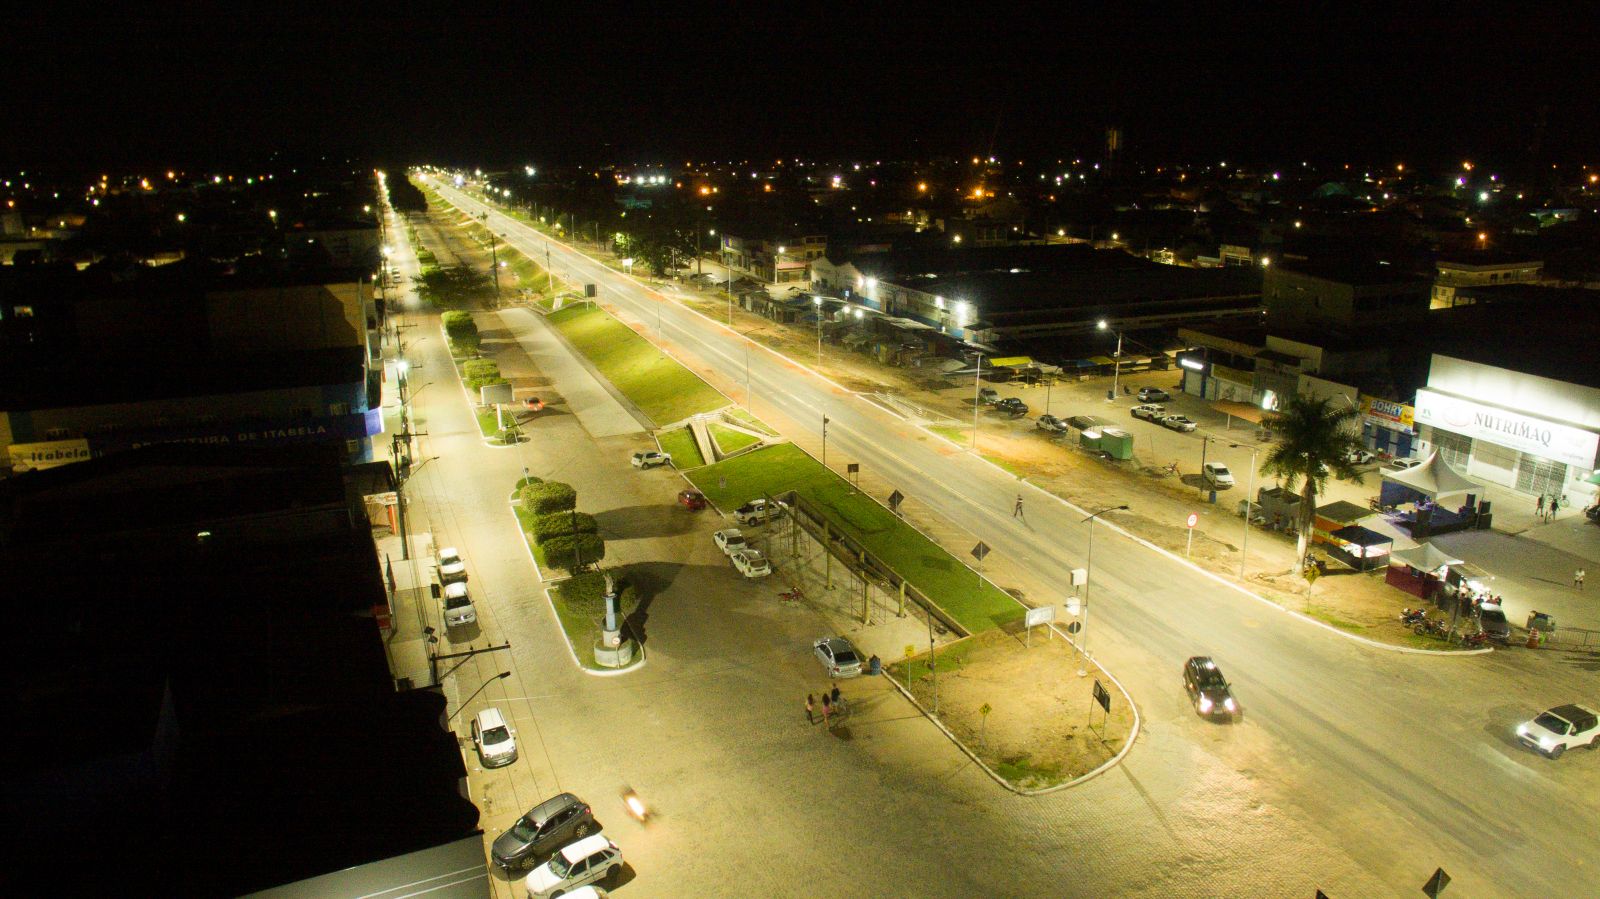 Itabela j tm acesso a maior visibilidade no percurso com a moderna iluminao de LED implantada s margens da rodovia. (Foto: Divulgao)